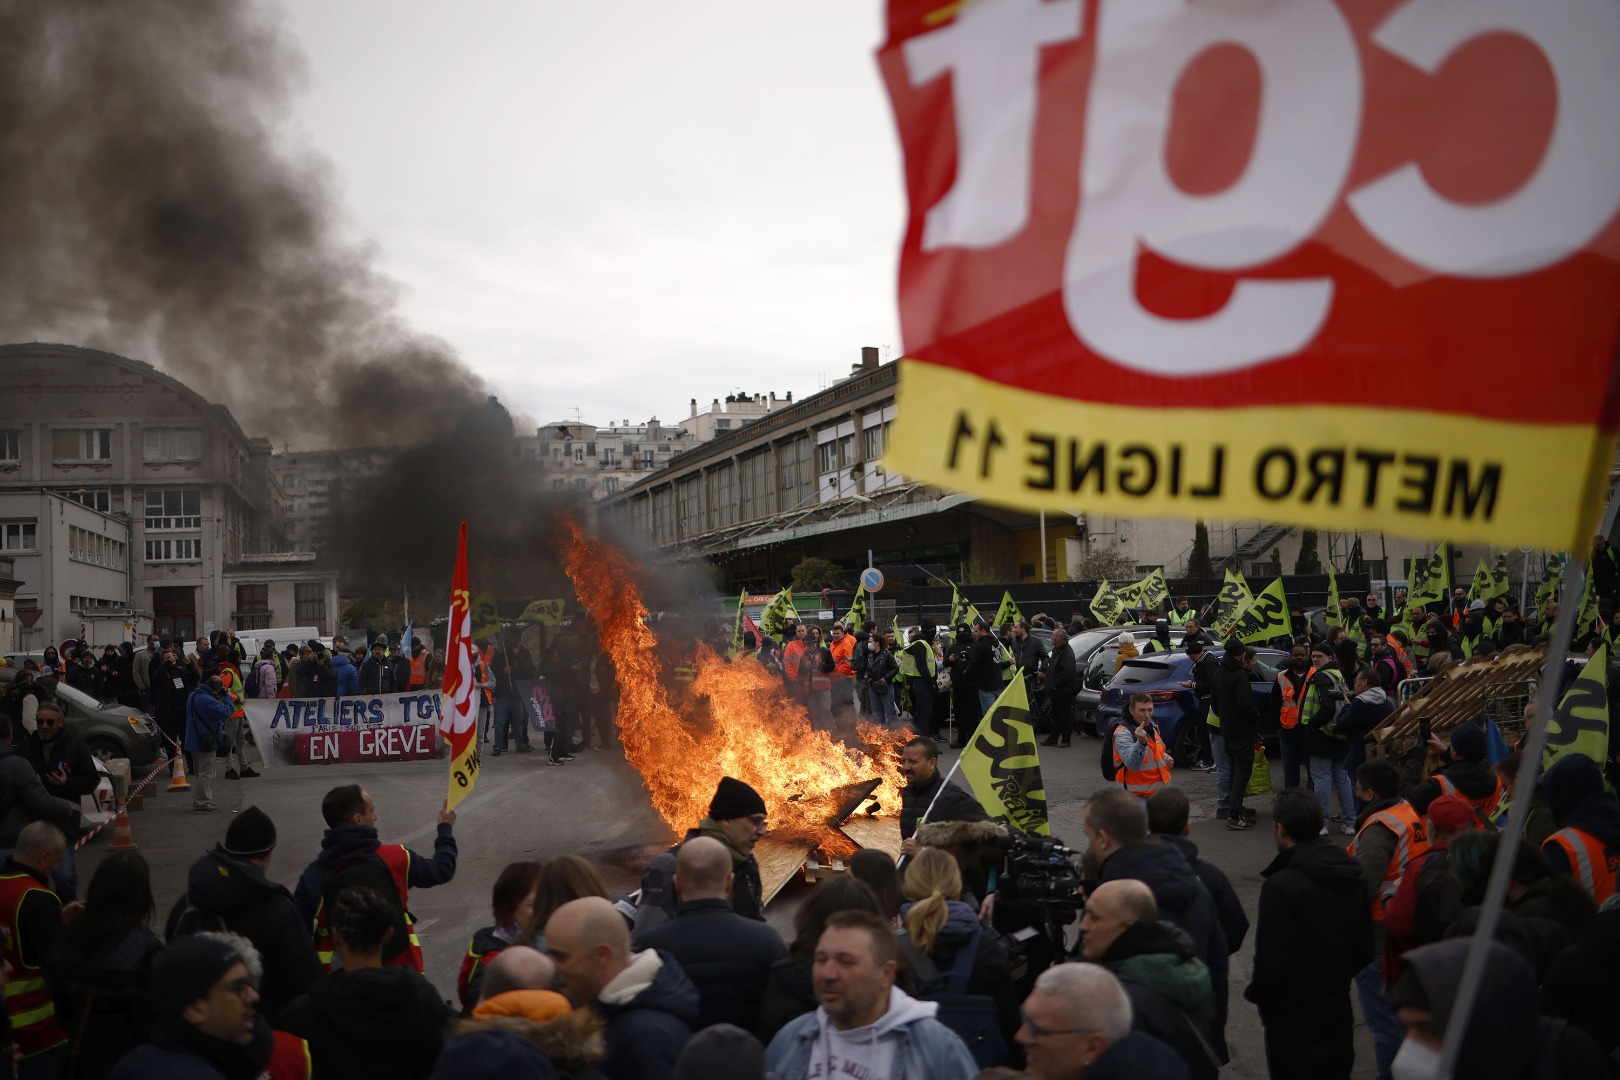 Fransa’da emeklilik reformuna karşı protestolar sürüyor: 27 gözaltı